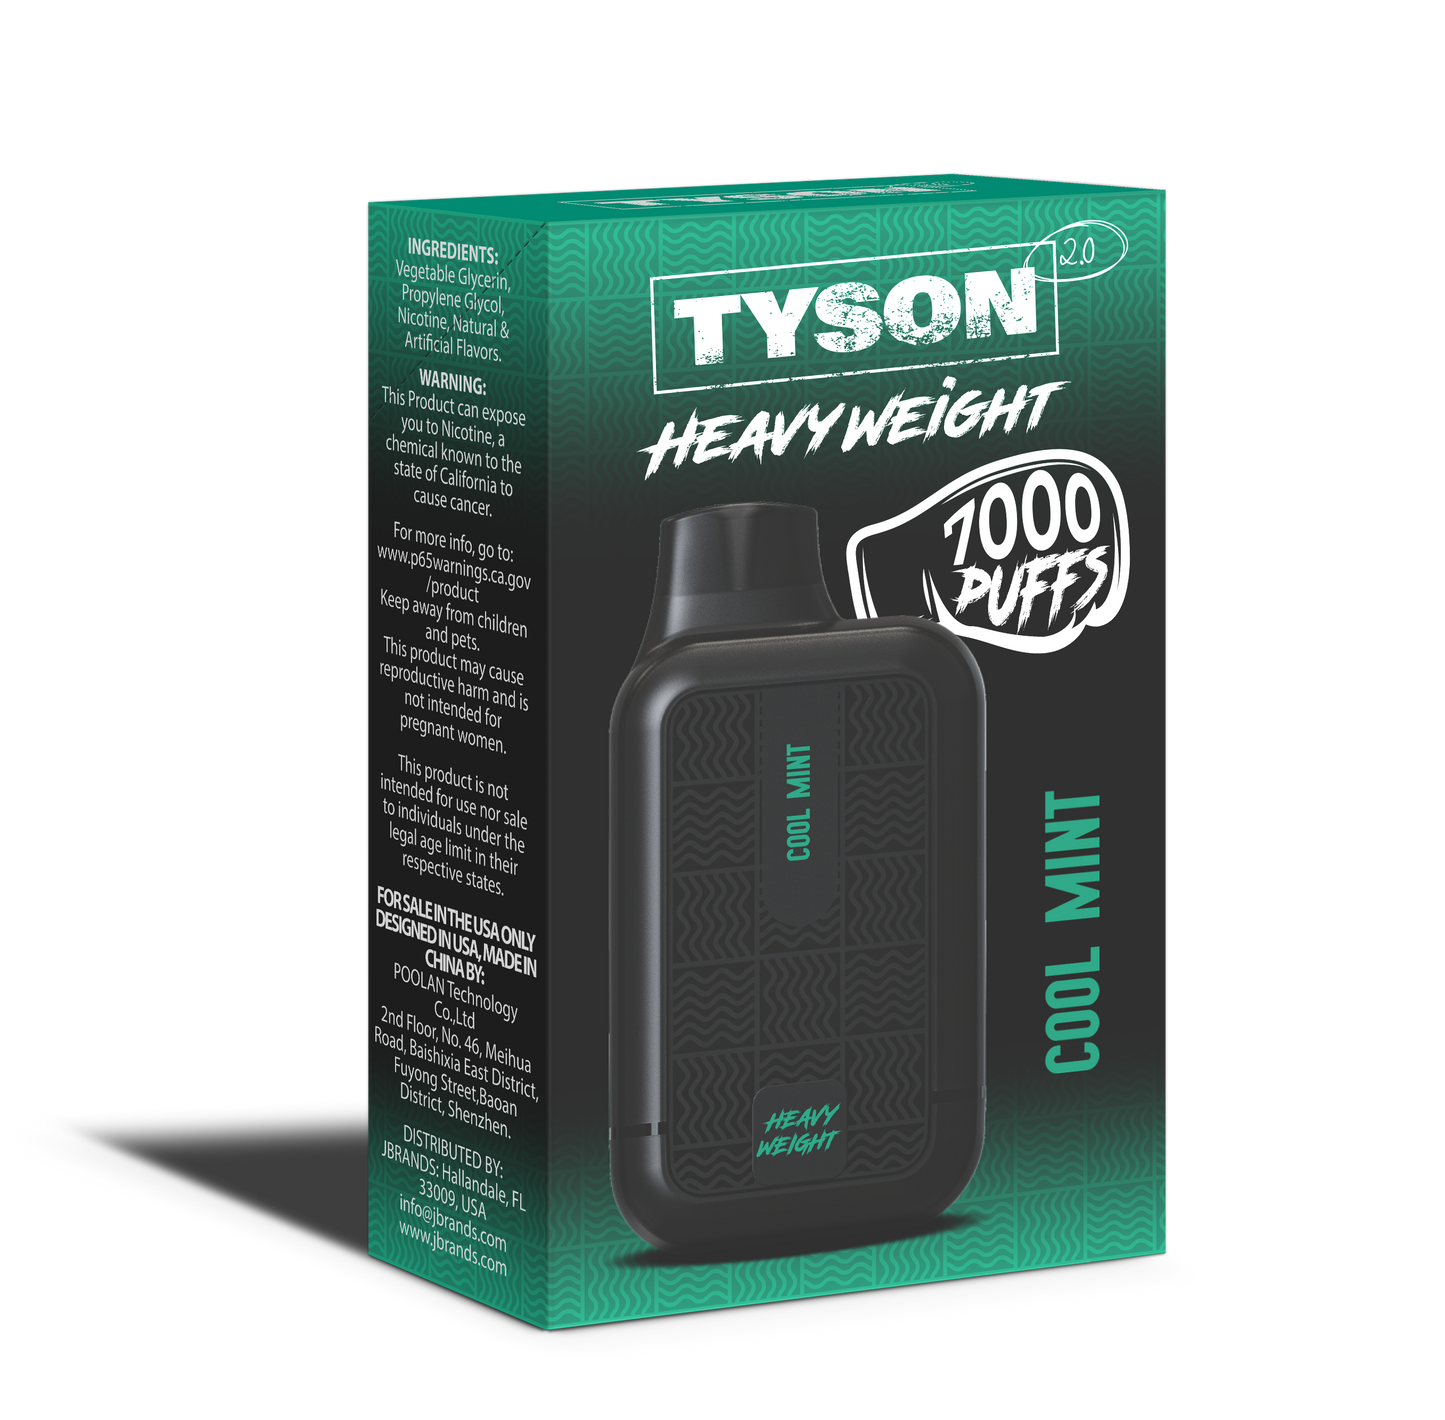 Tyson 2.0 Heavyweight 7000 Puffs Disposable Vape - Cool Mint